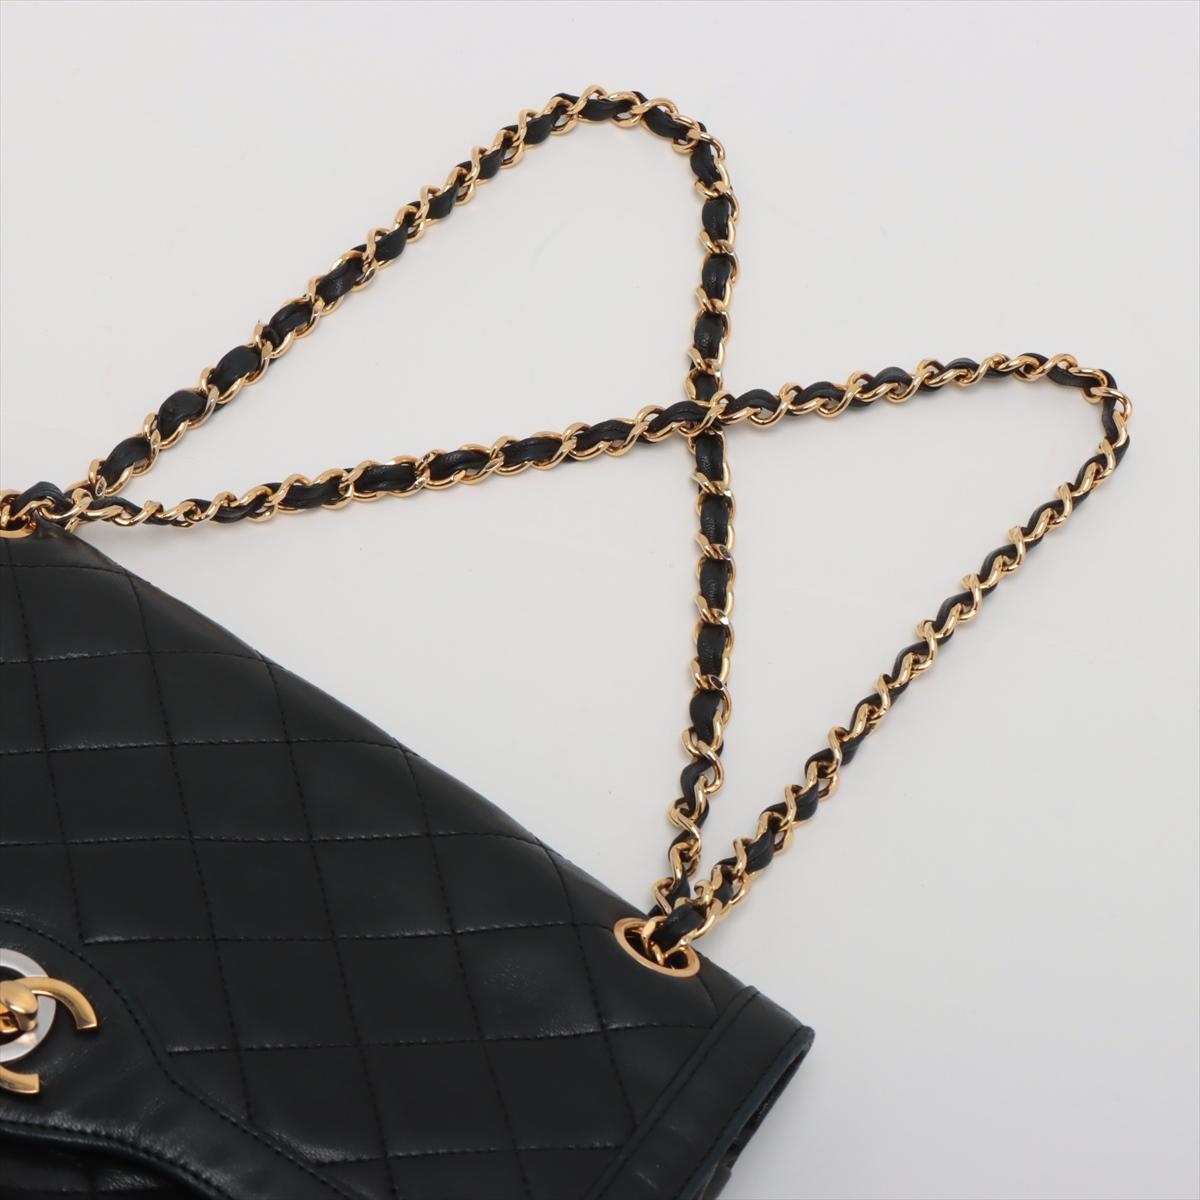 Chanel Matelasse Lambskin Paris Double Flap Double Chain Bag Black 2